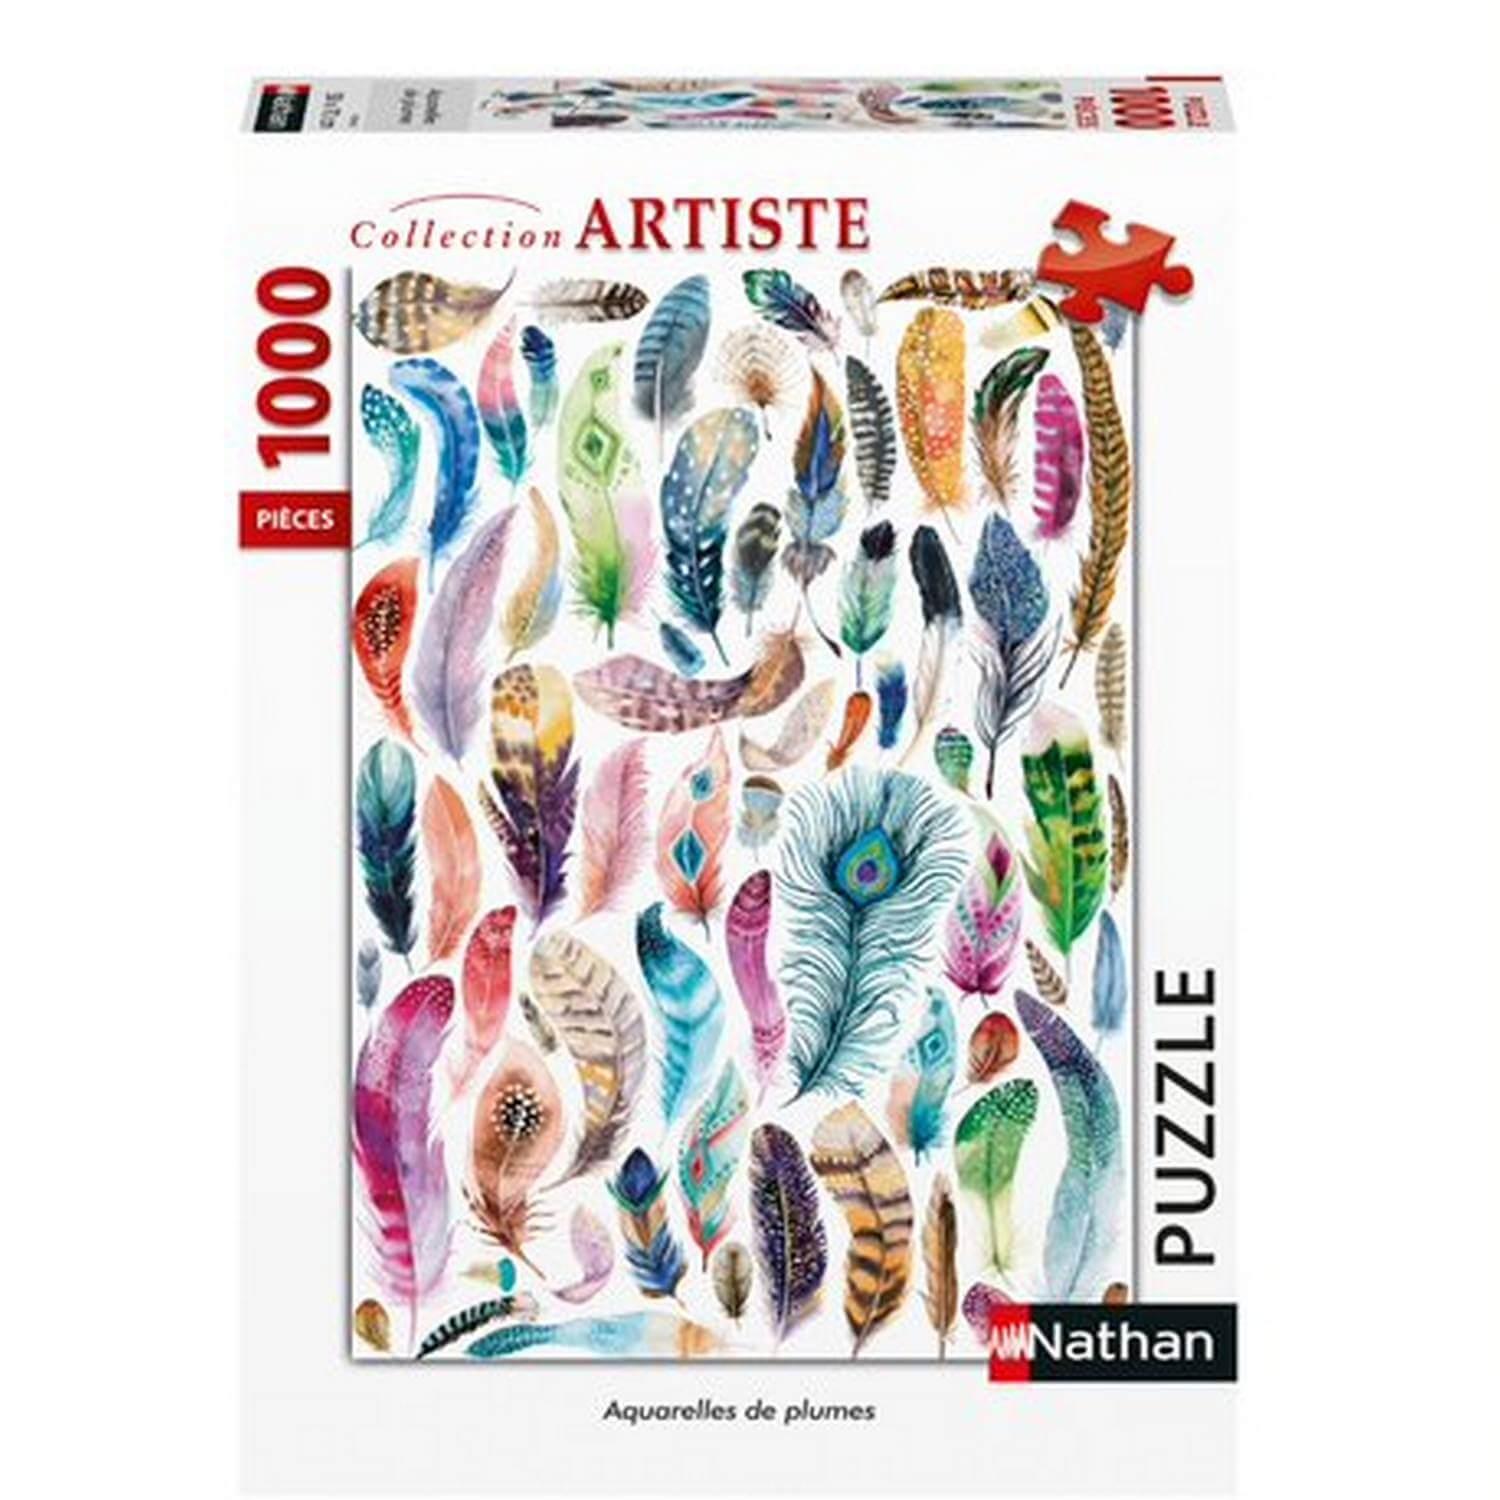 NATHAN PUZZLE - 3000 pieces- European Puzzle